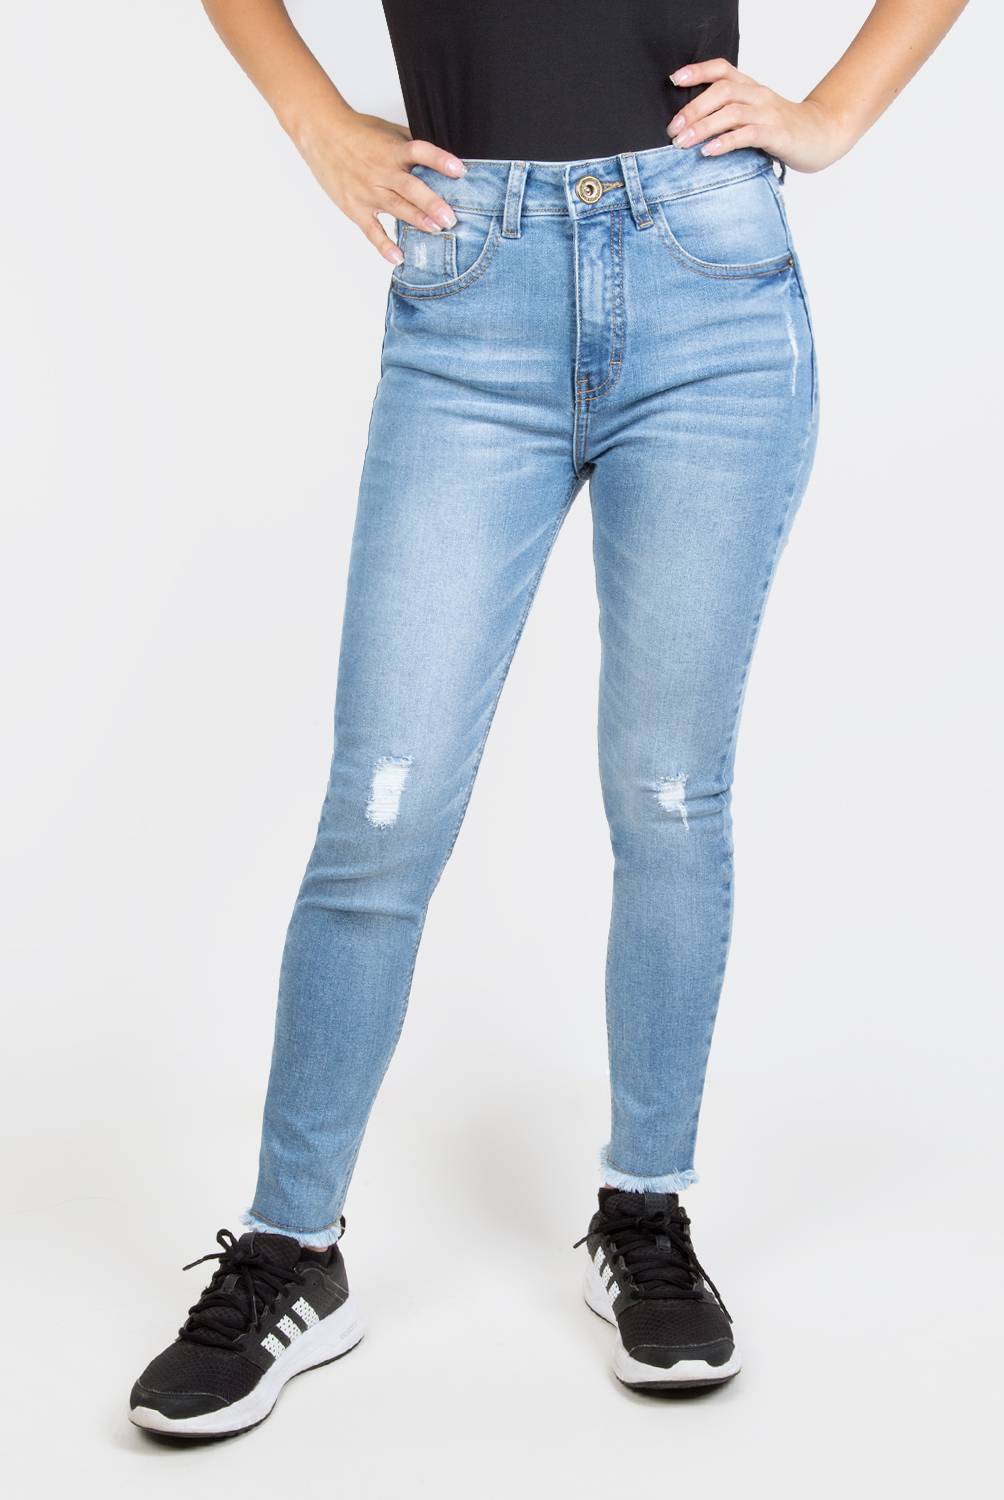 DENIMLAB - Jeans Skinny